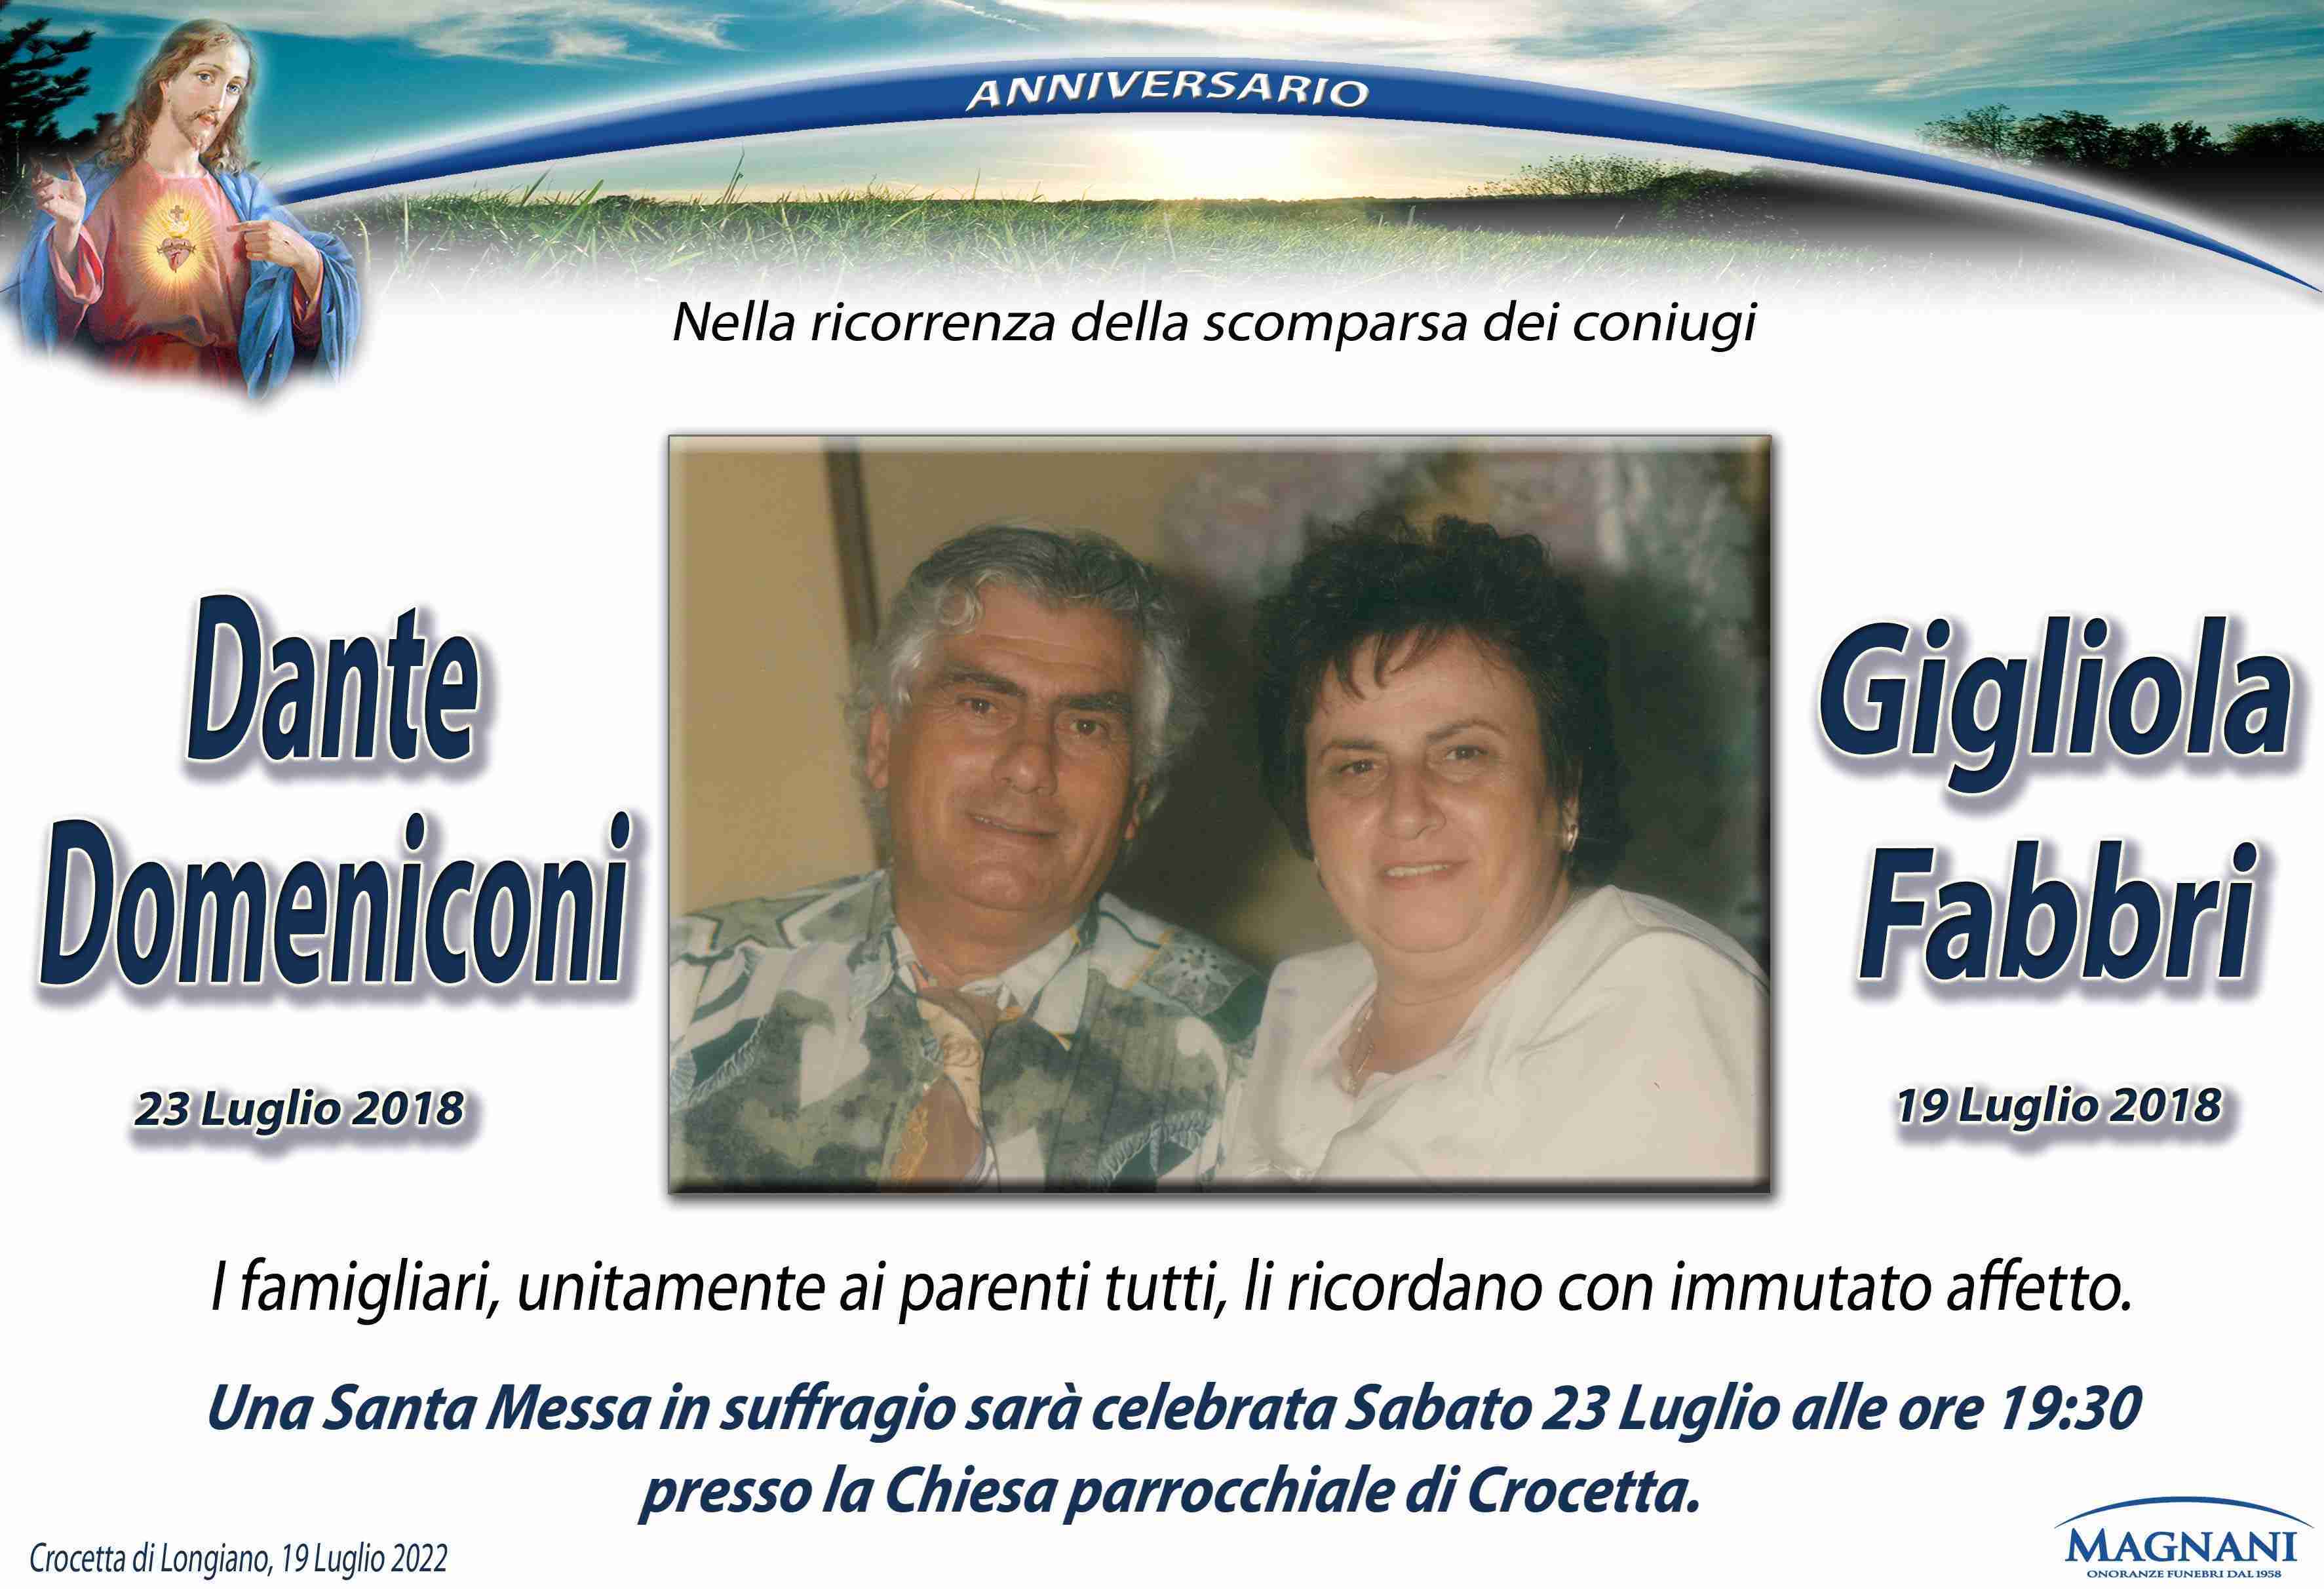 Dante Domeniconi e Gigliola Fabbri